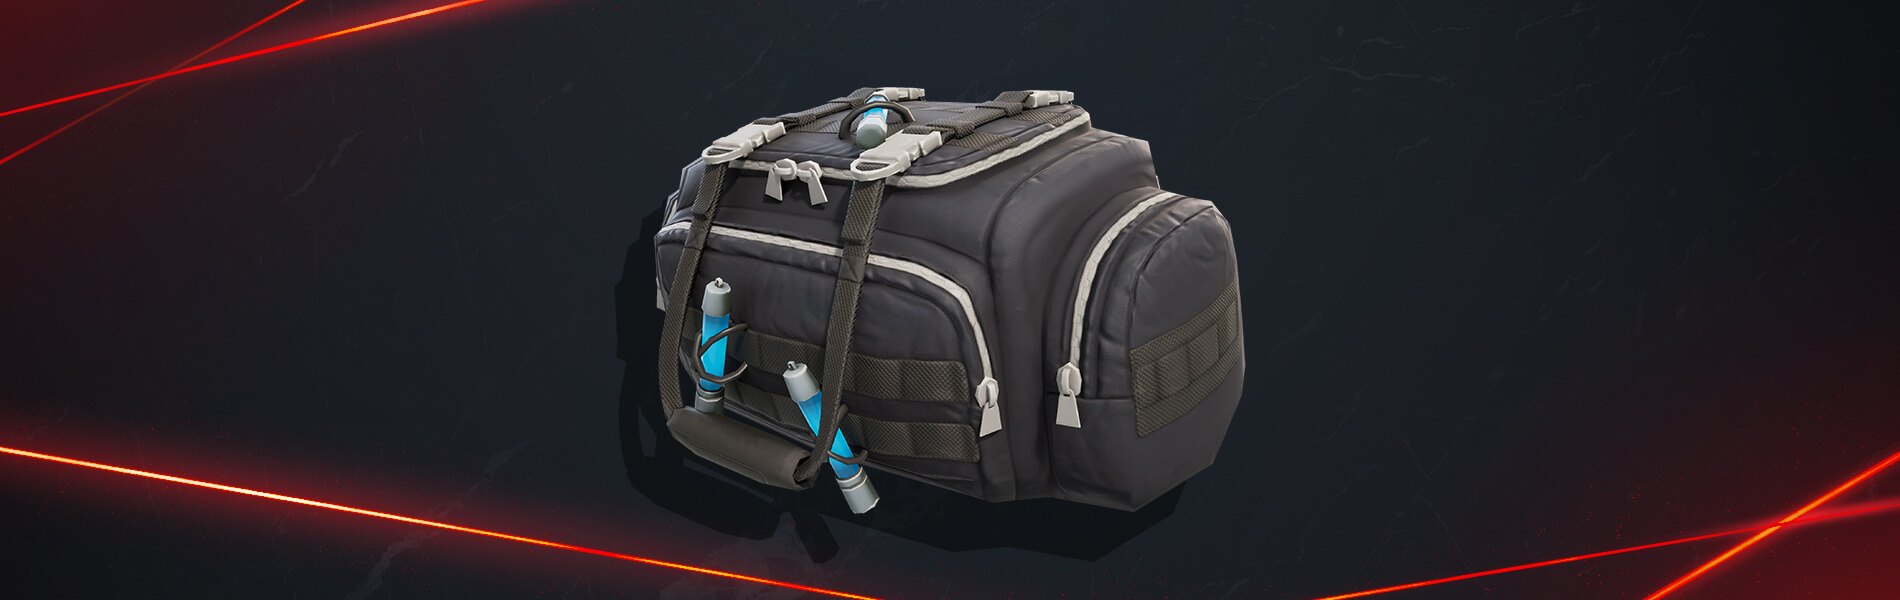 Robber's bag in Fortnite